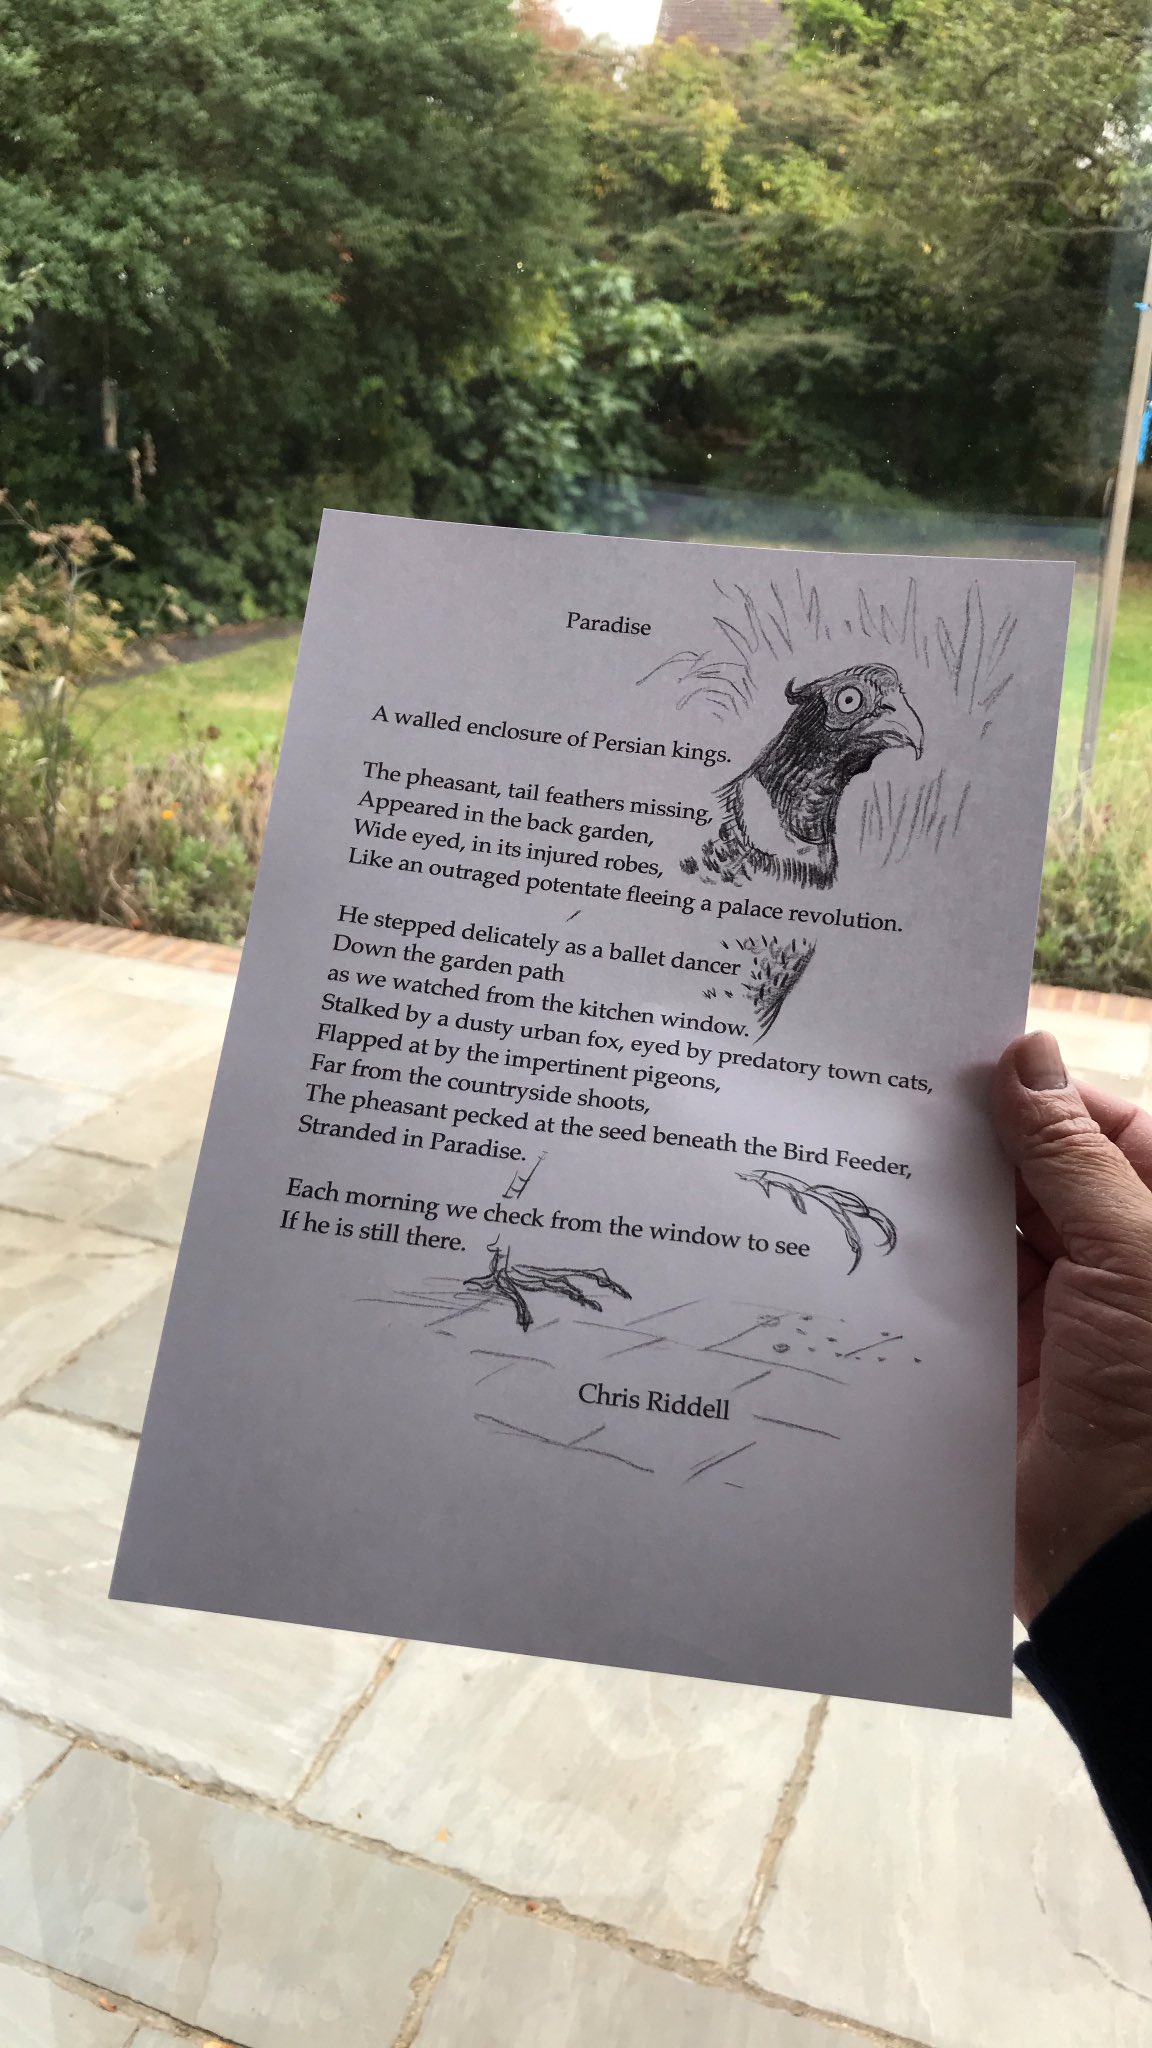 chris riddell on Twitter: "Poem for a pheasant. https://t.co/16VAk10bK3" /  Twitter